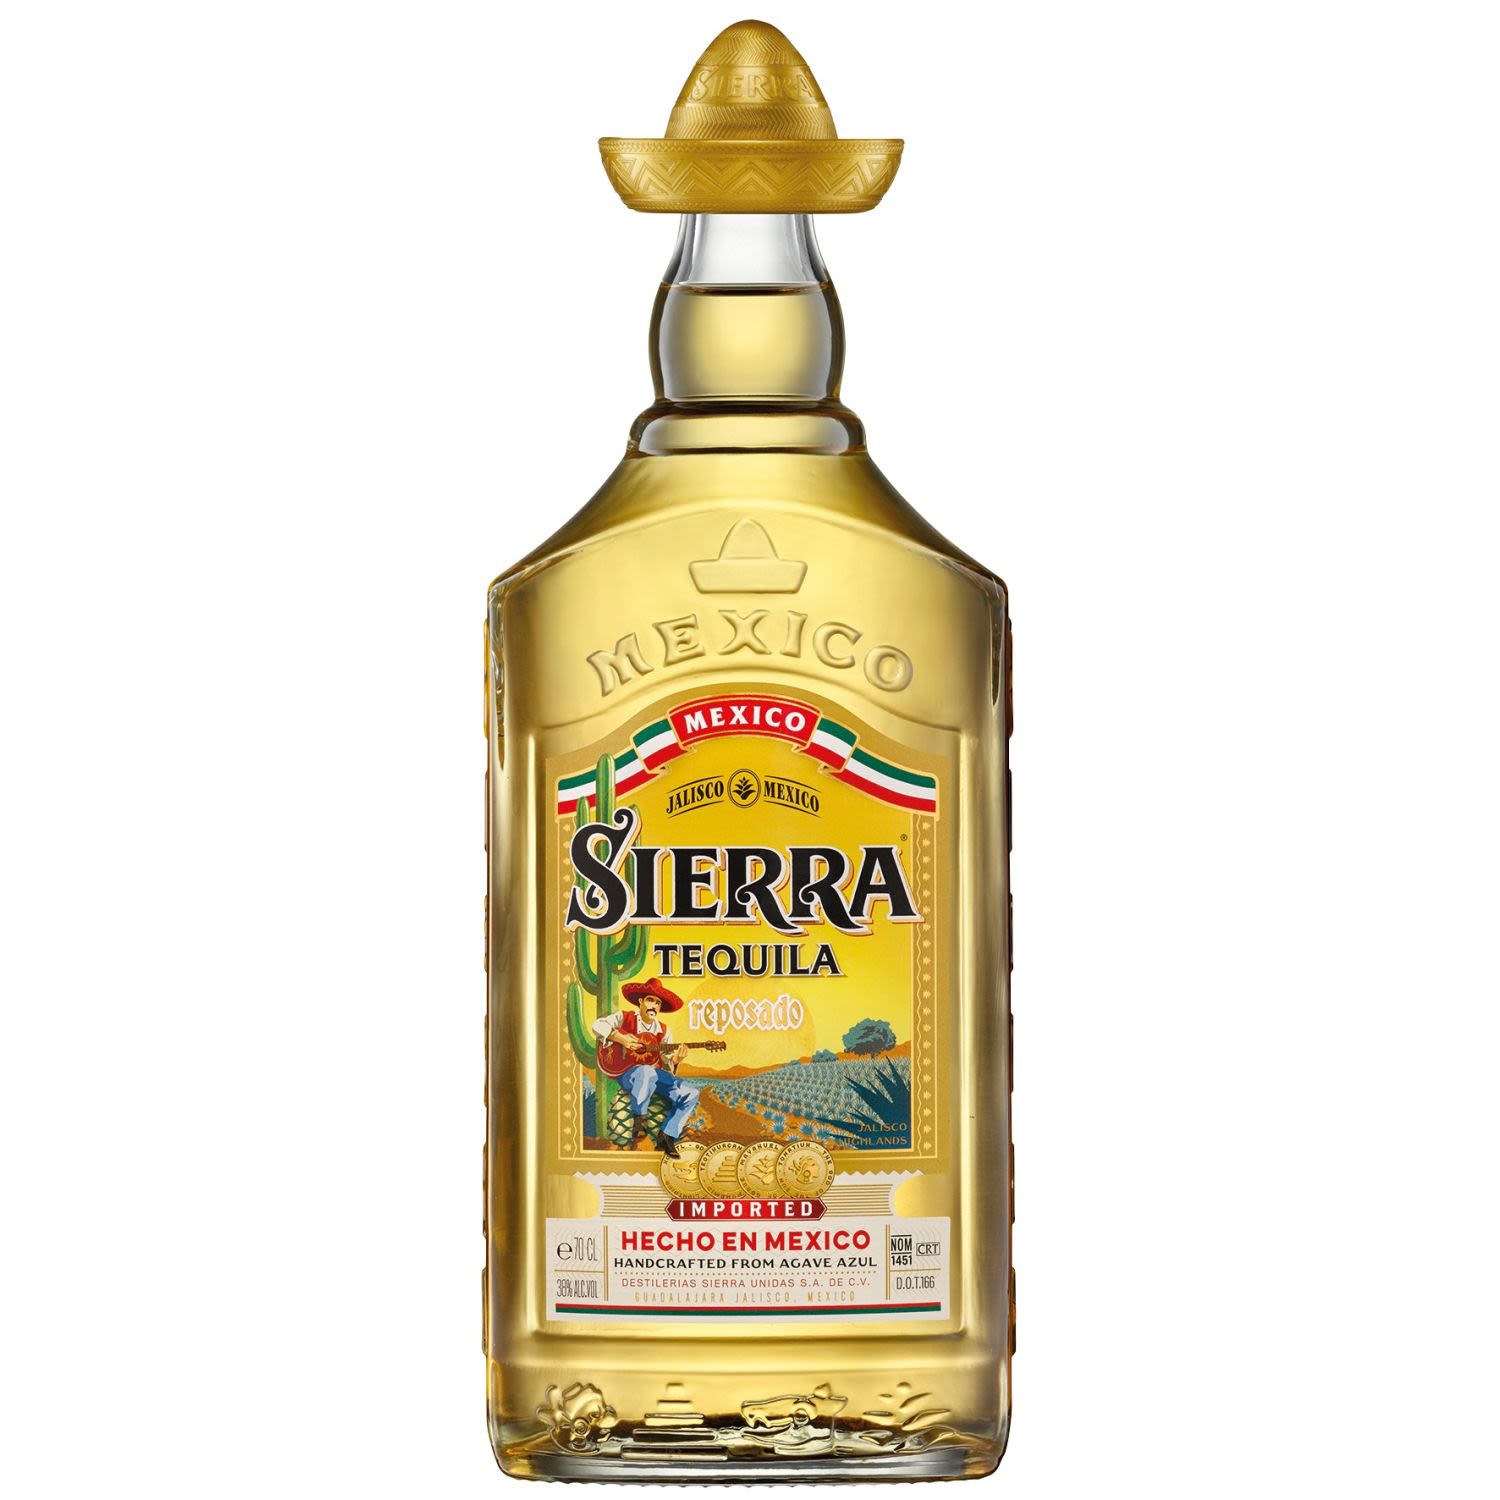 SIERRA TEQUILA REPOSADO 700mL<br /> <br />Alcohol Volume: 38.00%<br /><br />Pack Format: Bottle<br /><br />Standard Drinks: 21</br /><br />Pack Type: Bottle<br />